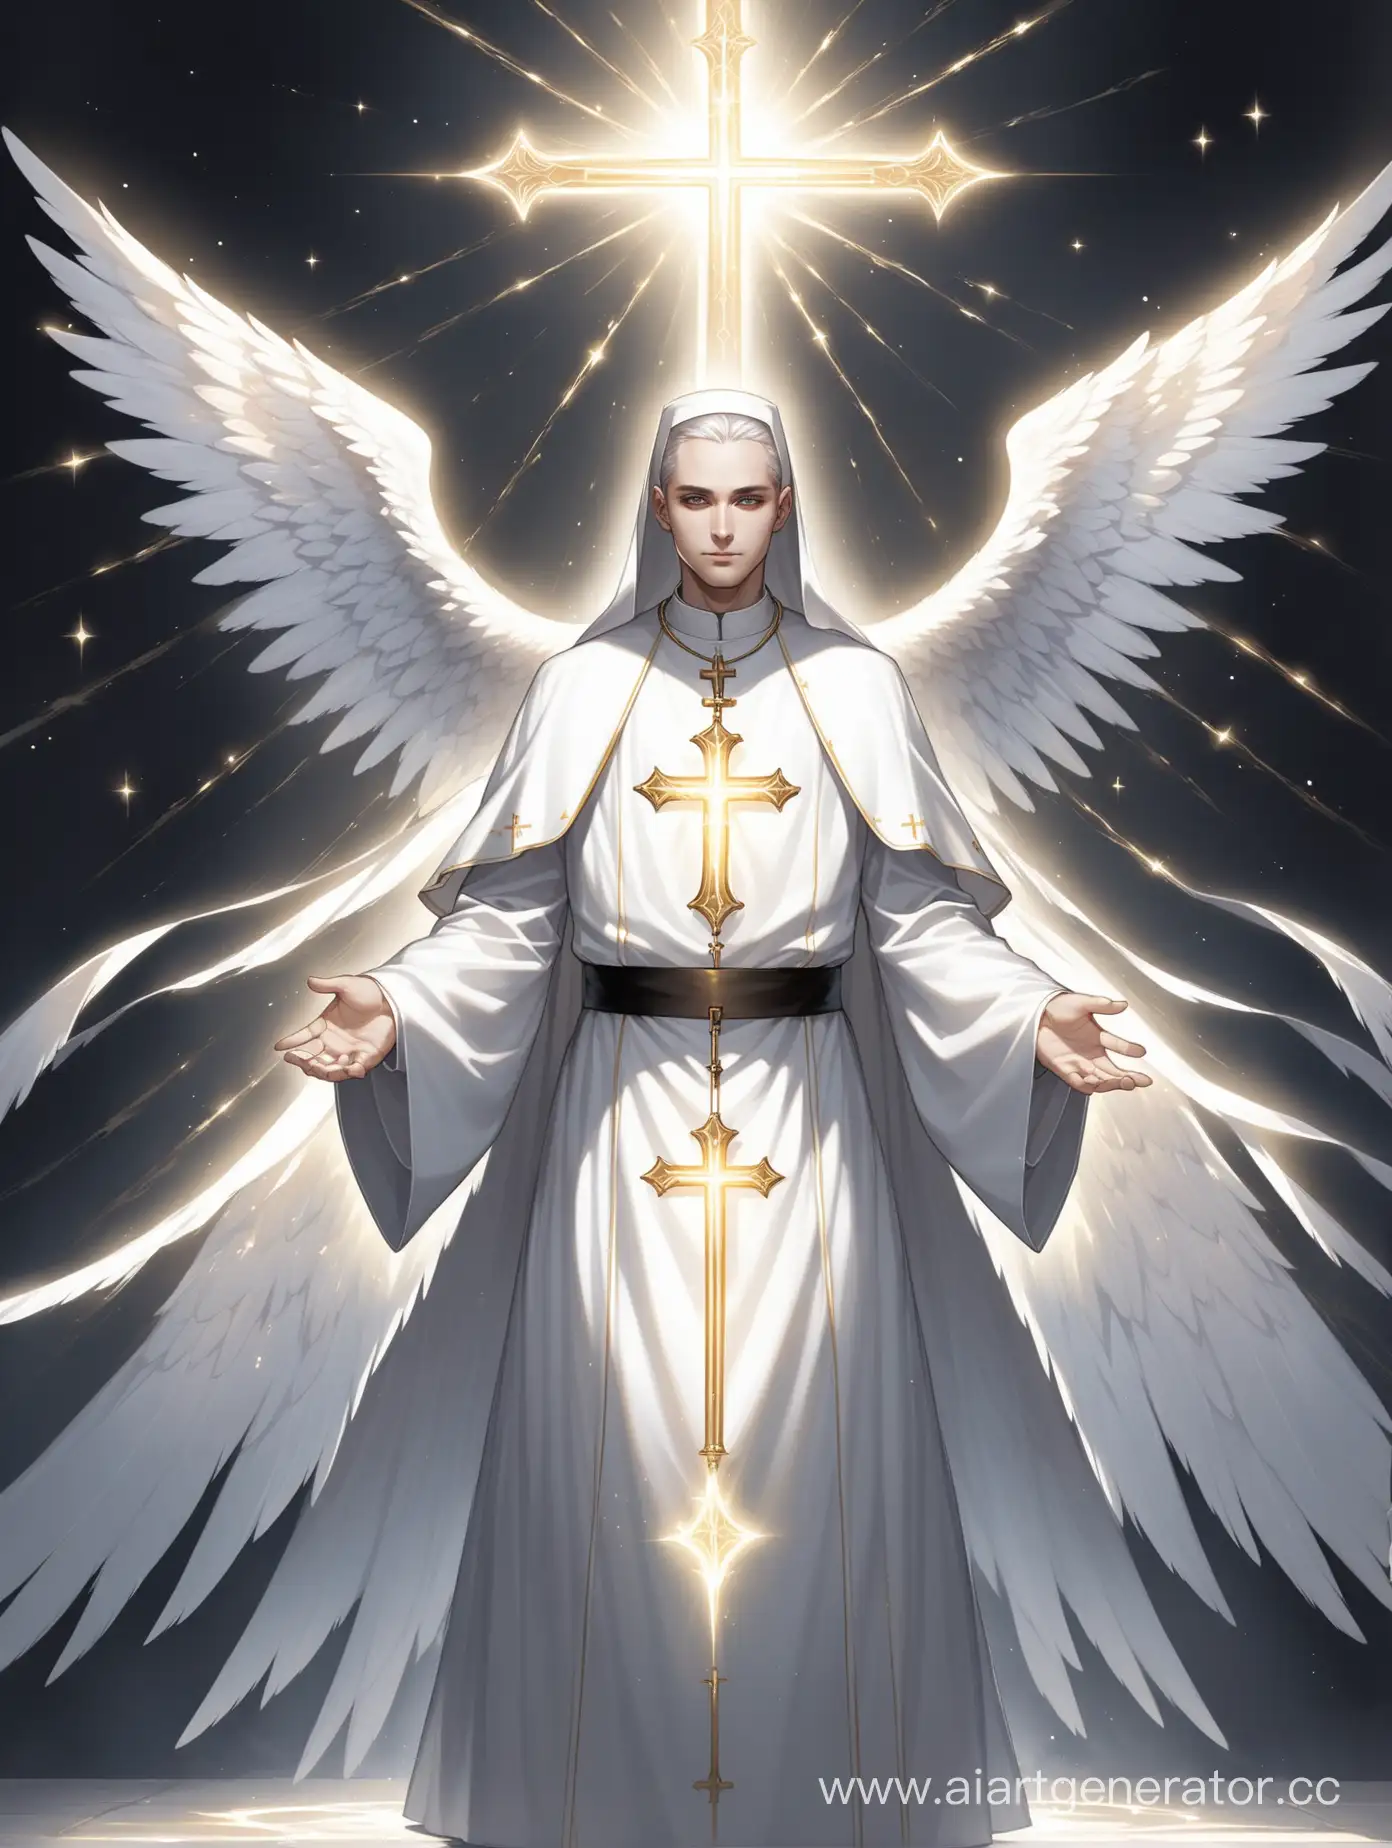 это священик,одет в одежду священика в изображением креста,его кожа светится светом,глаза его светятся белым цветом,у него есть крылья которые состоят из света,а кожа его белая как сам свет